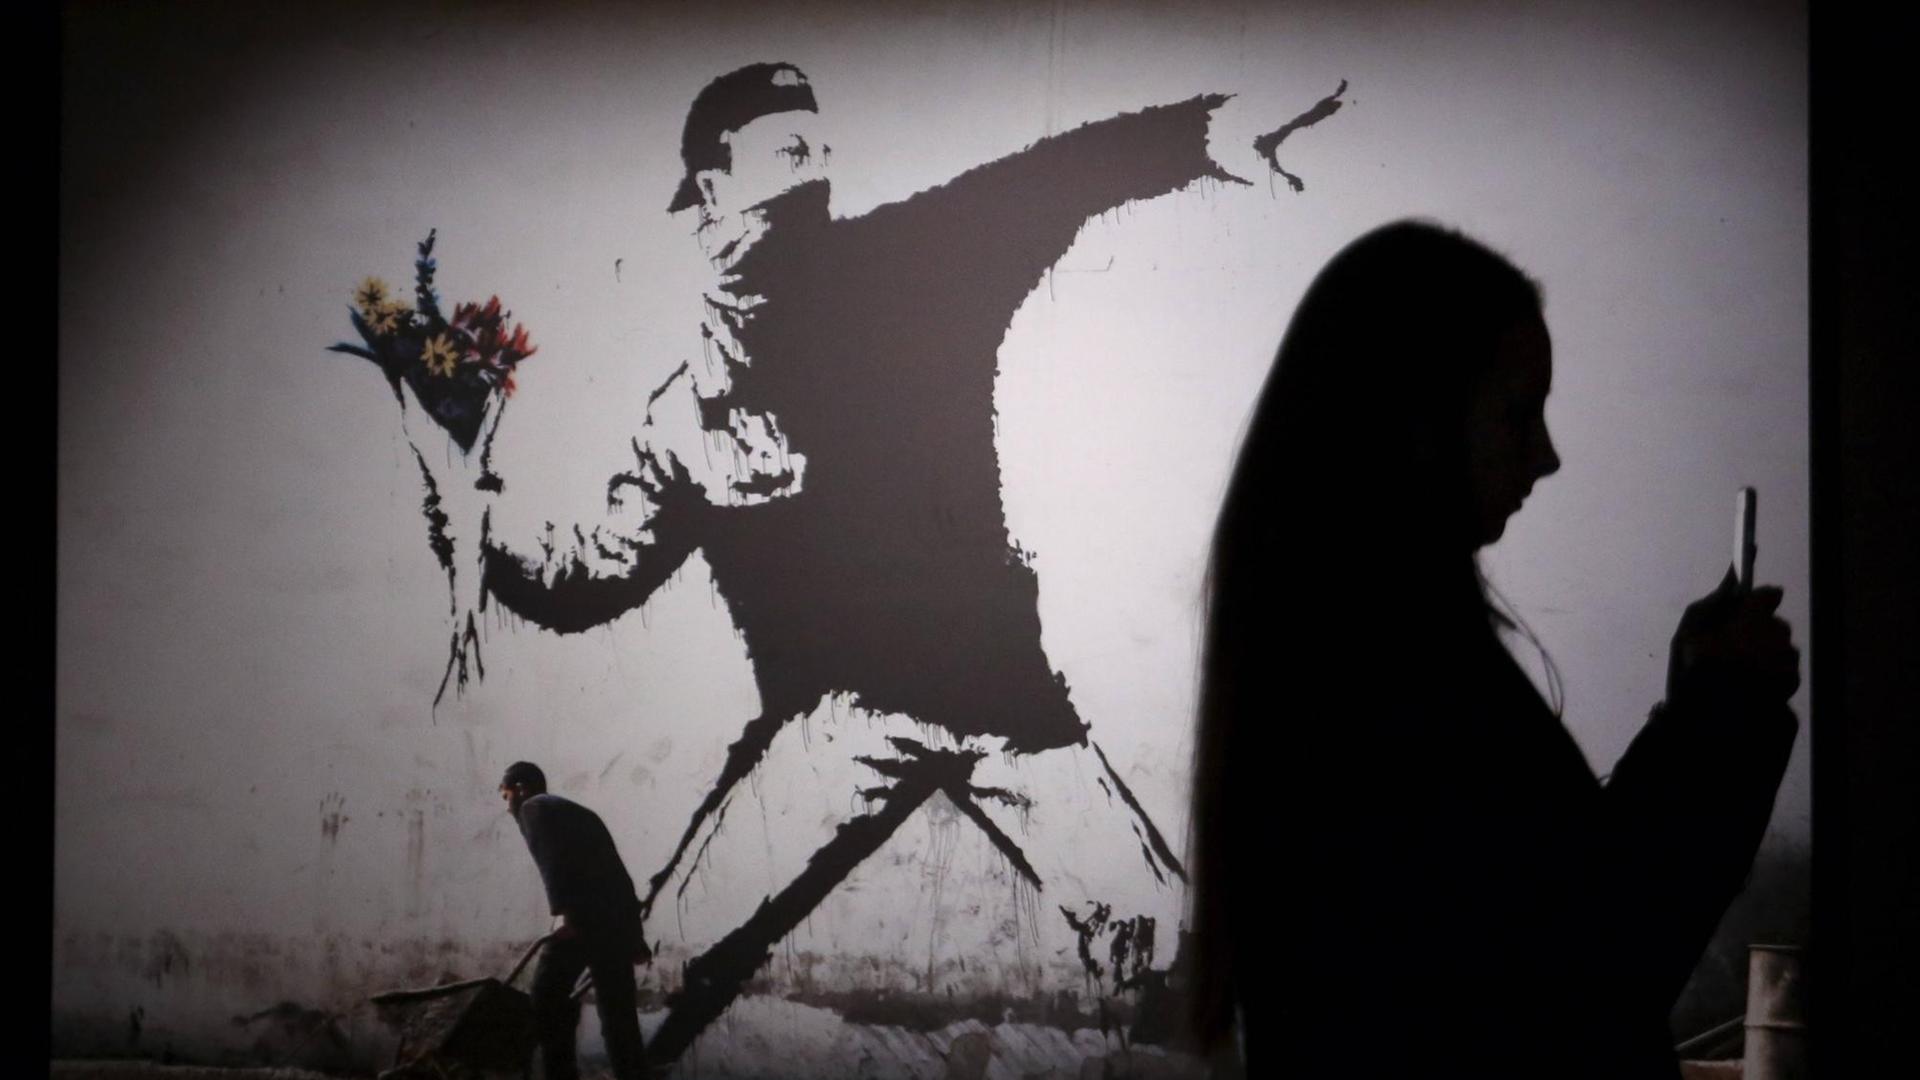 Das Bild zeigt die Schatten von Besuchern einer Banksy-Ausstellung in St. Petersburg, Russland. Zu sehen ist das Bild "The Flower Thrower" - der Blumenwerfer, das stilisierte Abbild eines Protestierenden, der mit seinem Arm weit ausholt, um einen Strauß Blumen zu werfen.